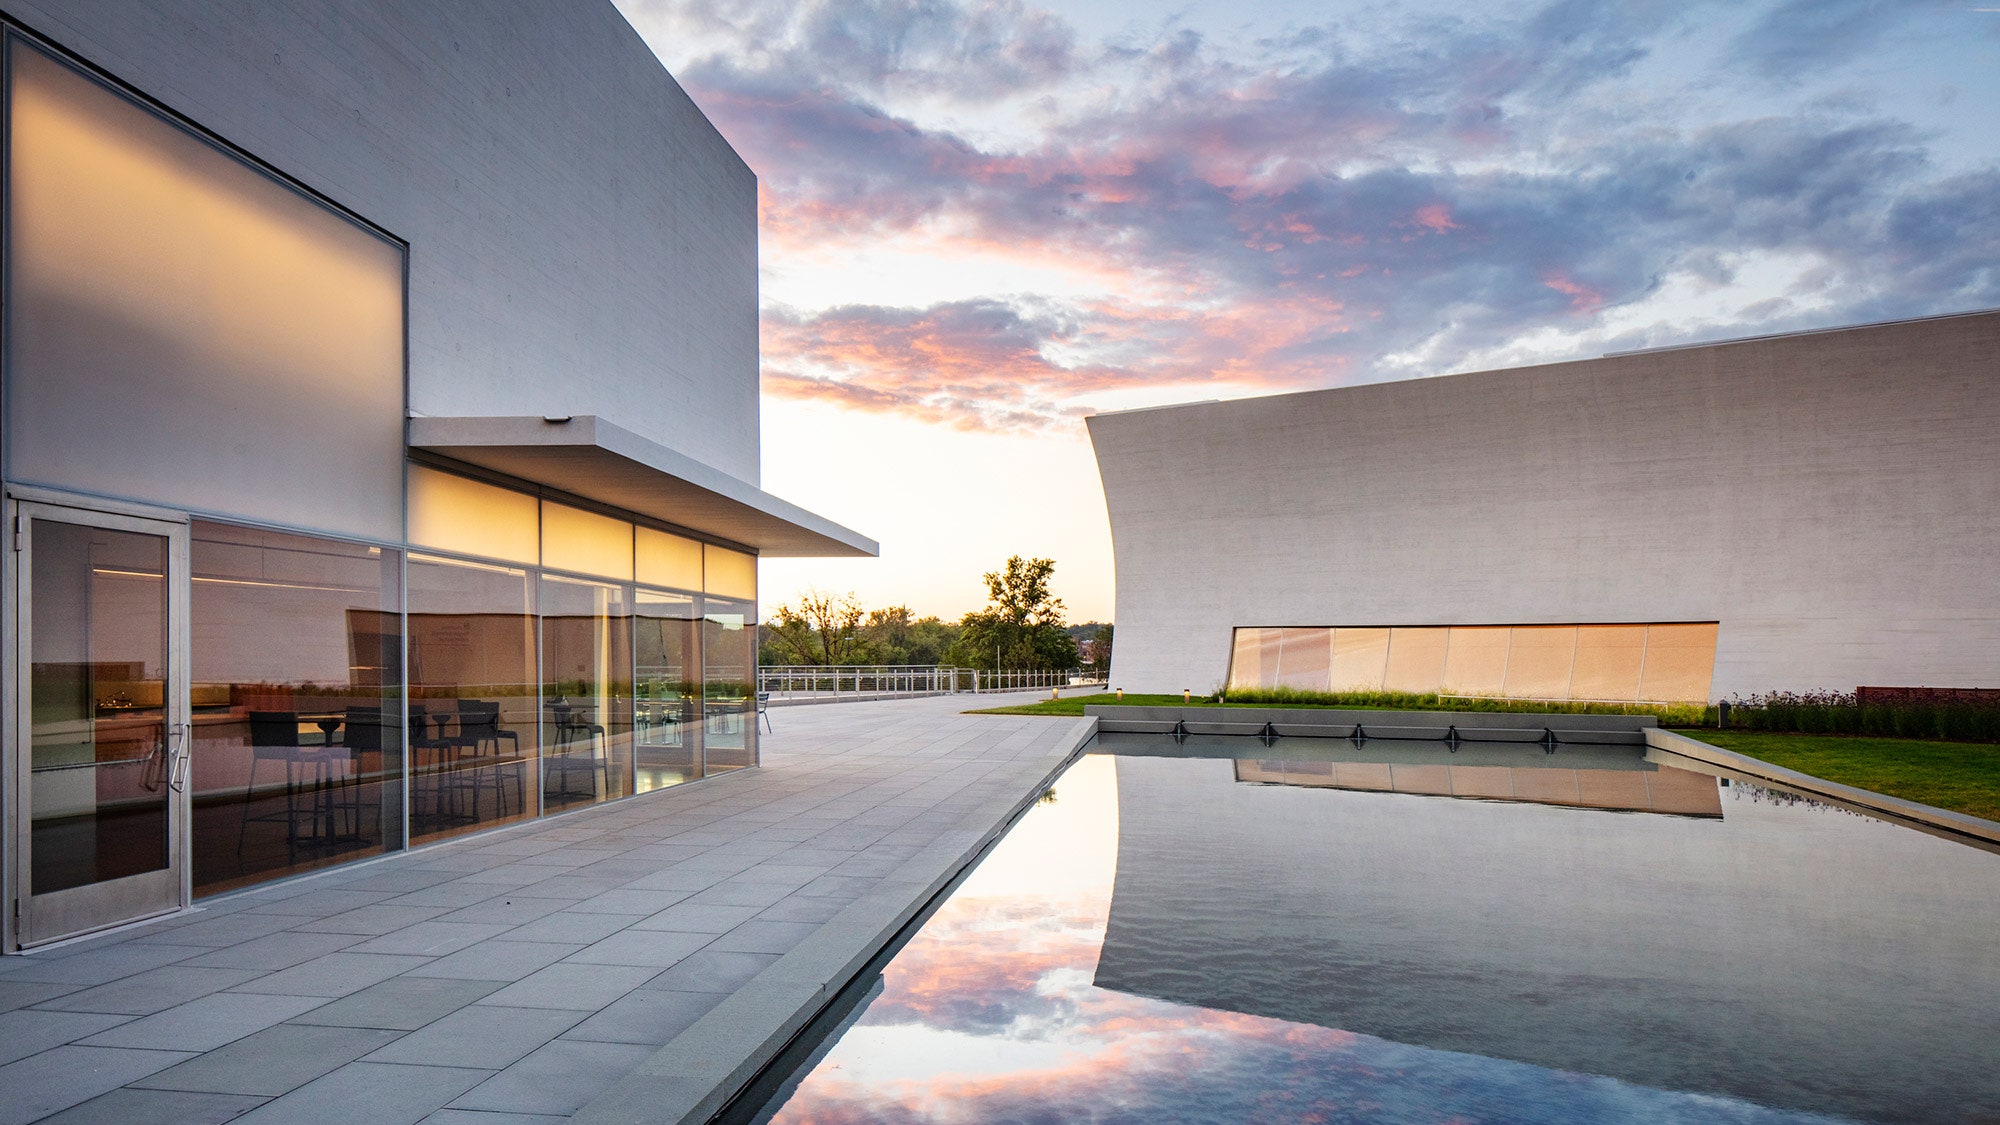 В Вашингтоне открылись новые павильоны Центра Джона Кеннеди по проекту Steven Holl Architects